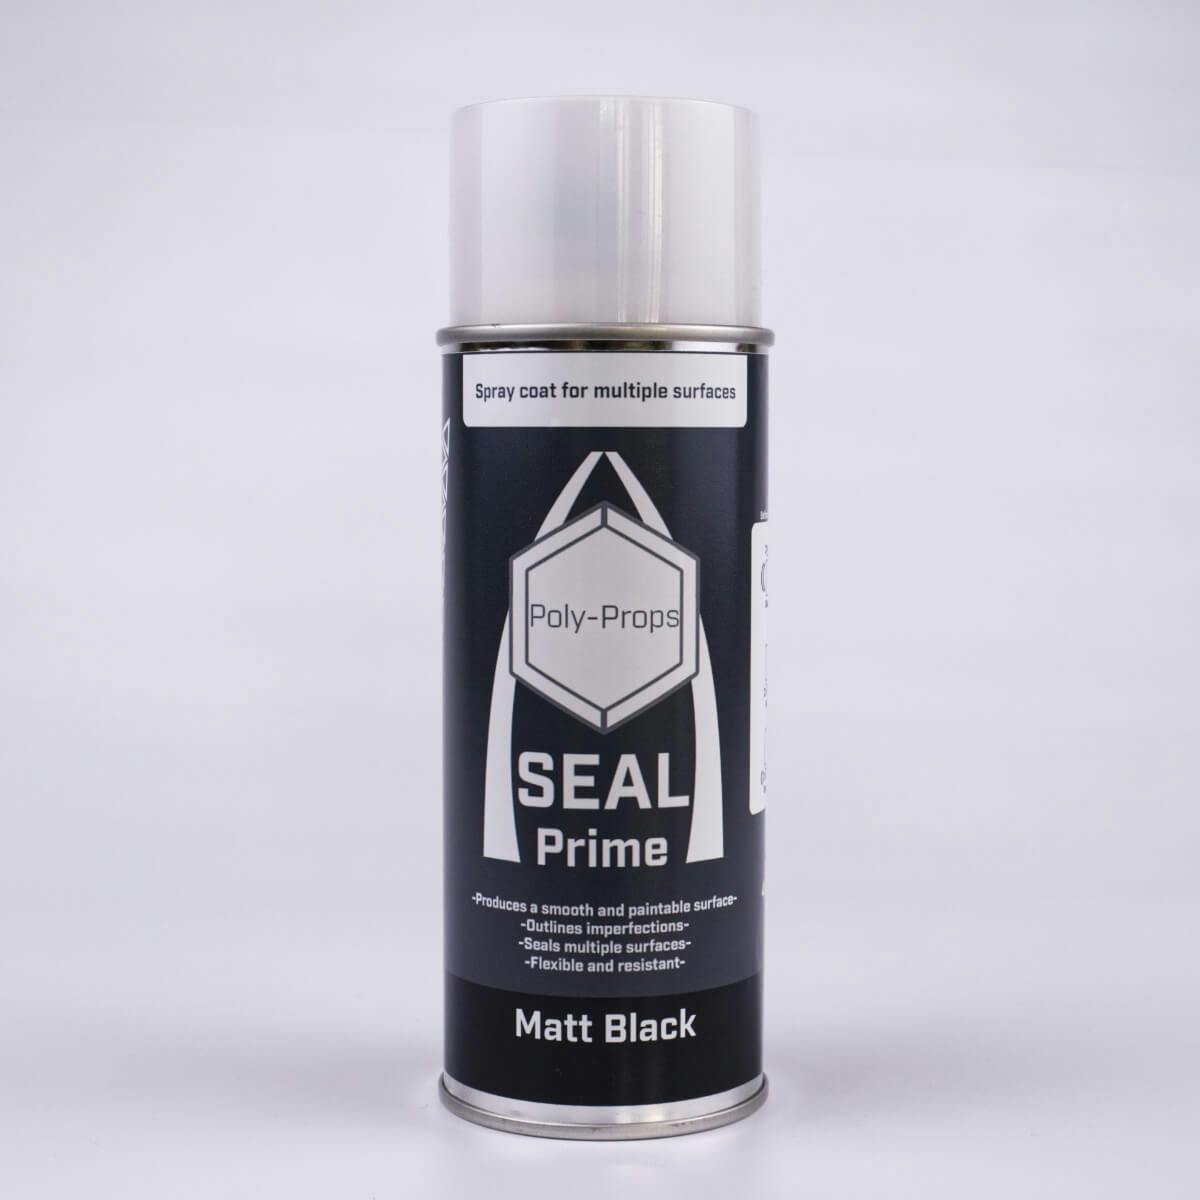 Seal Prime primer spray in matte black